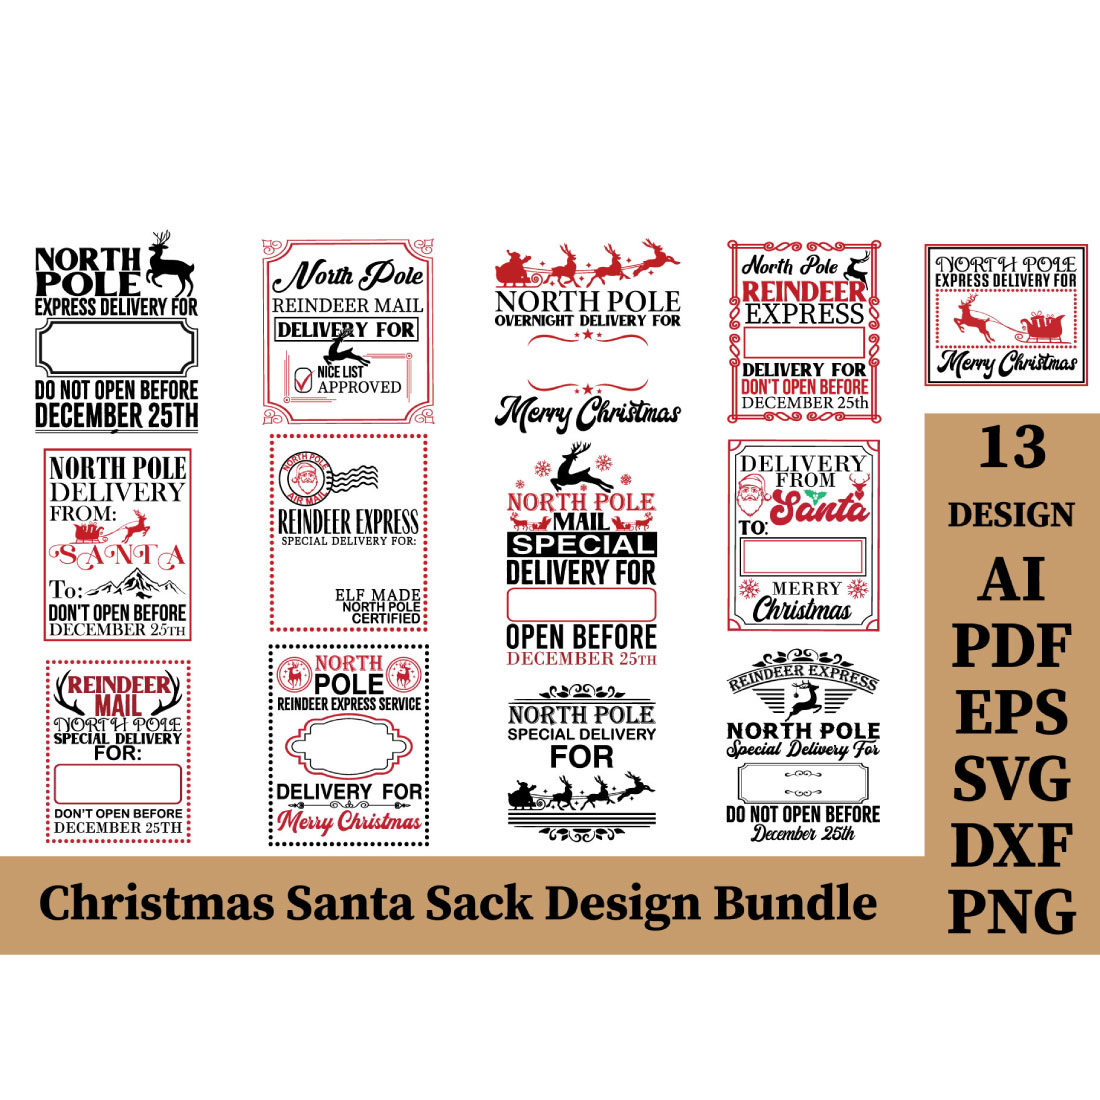 Christmas Santa Sack Bundle cover image.